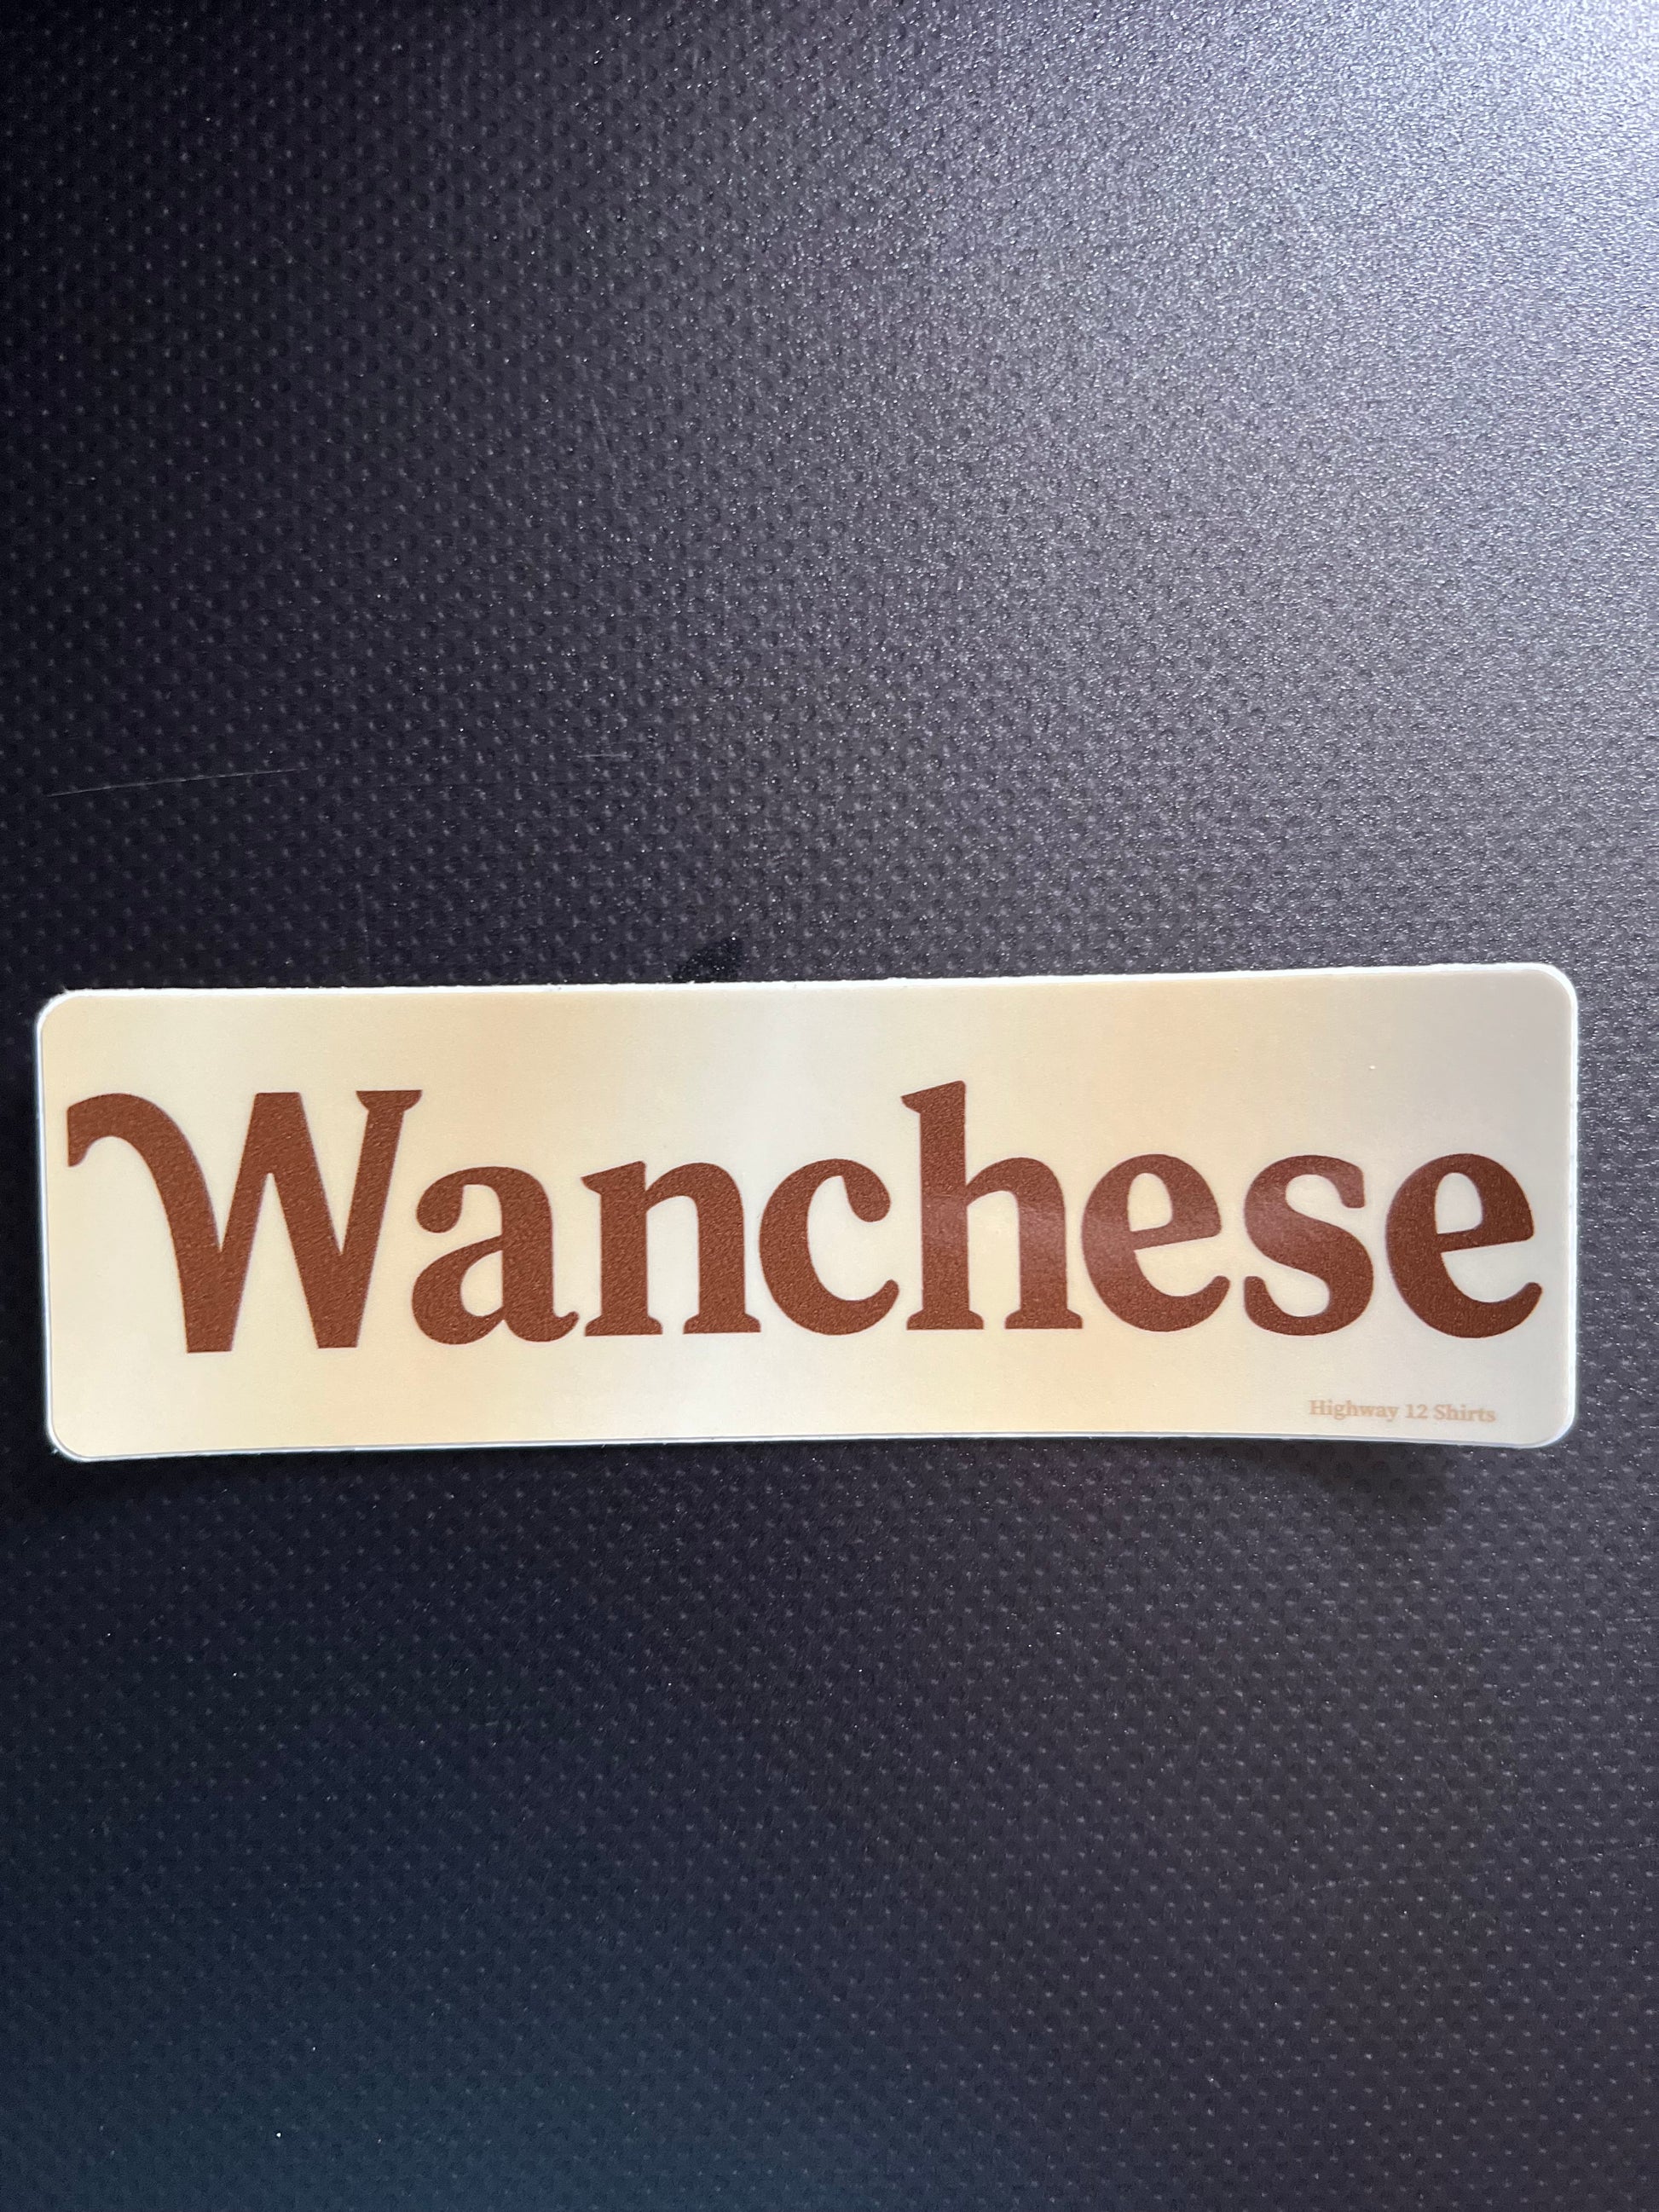 Wanchese sticker - Highway12Shirts